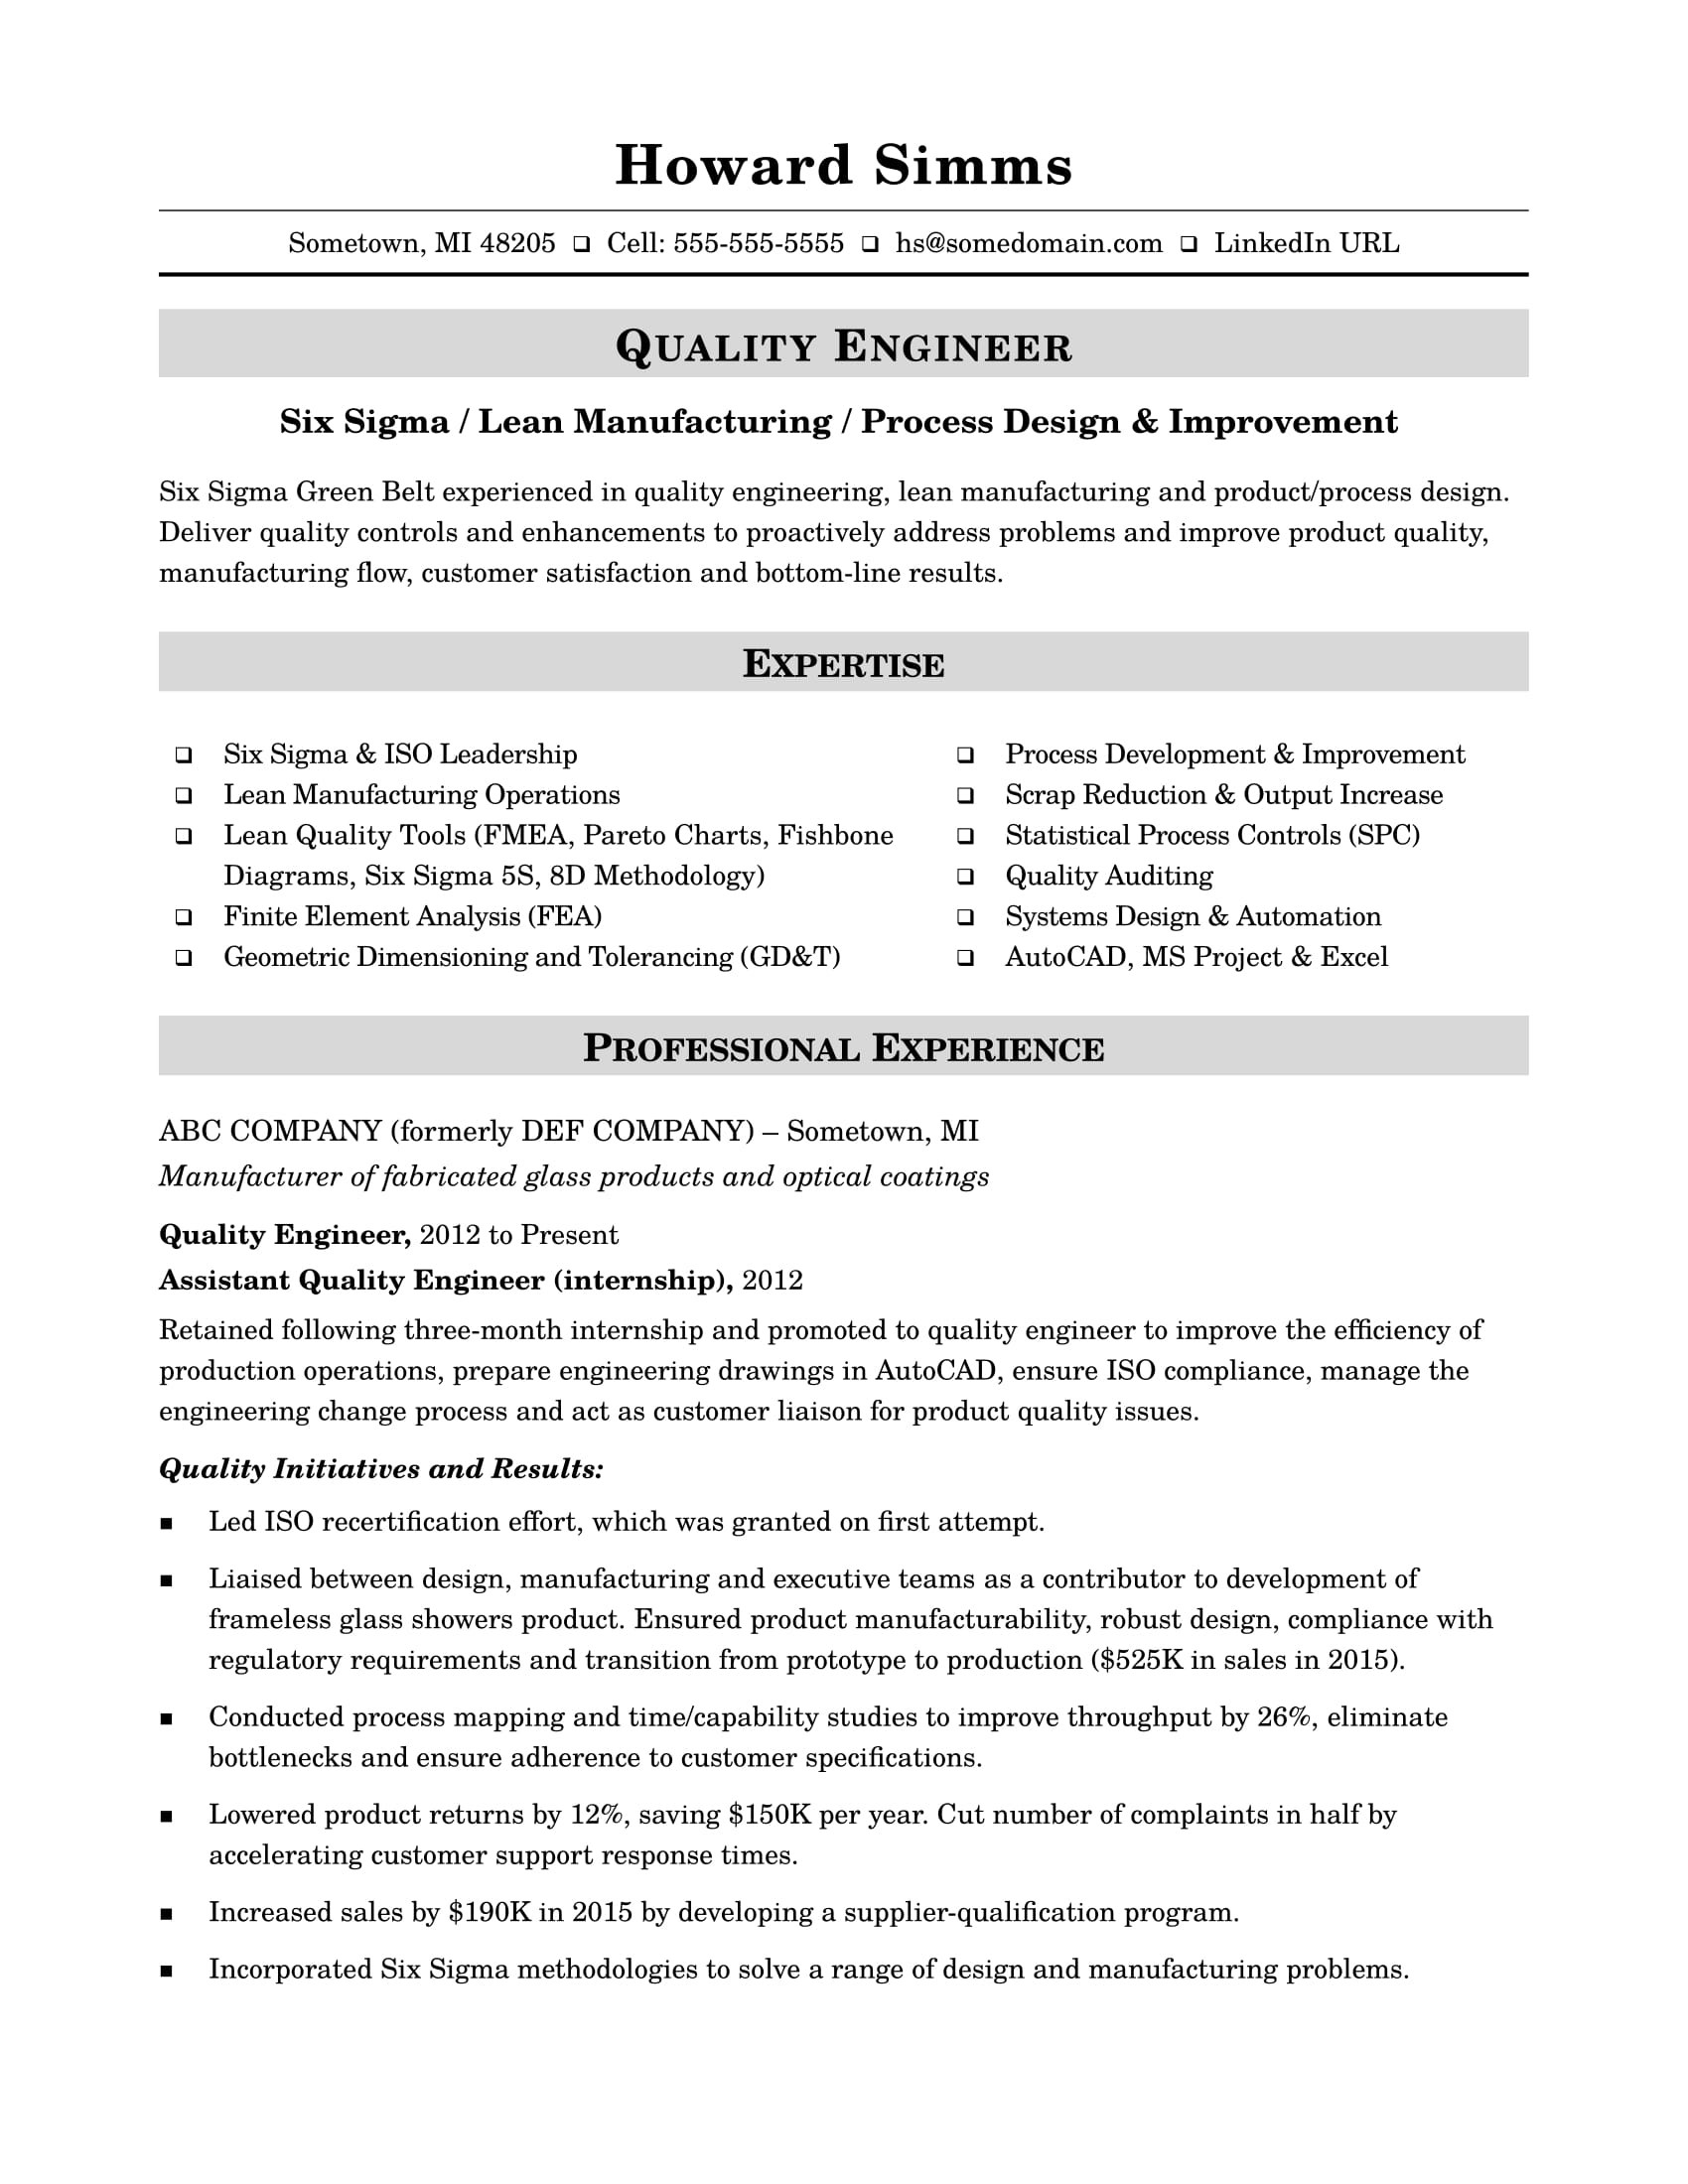 Sample Resume for Quality Control Technician Sample Resume for A Midlevel Quality Engineer Monster.com